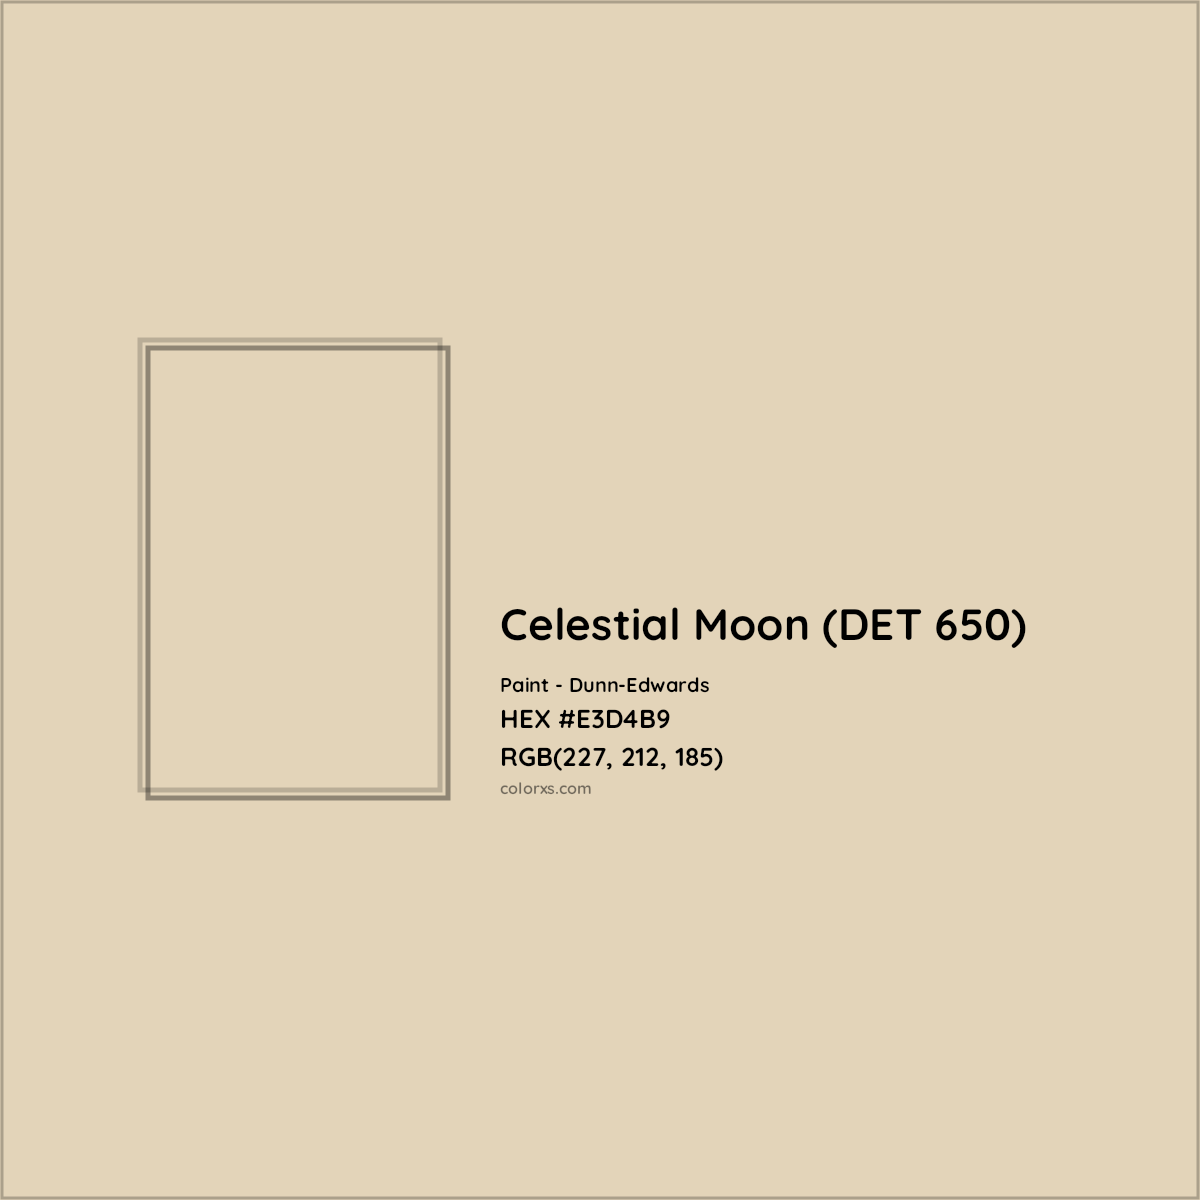 HEX #E3D4B9 Celestial Moon (DET 650) Paint Dunn-Edwards - Color Code